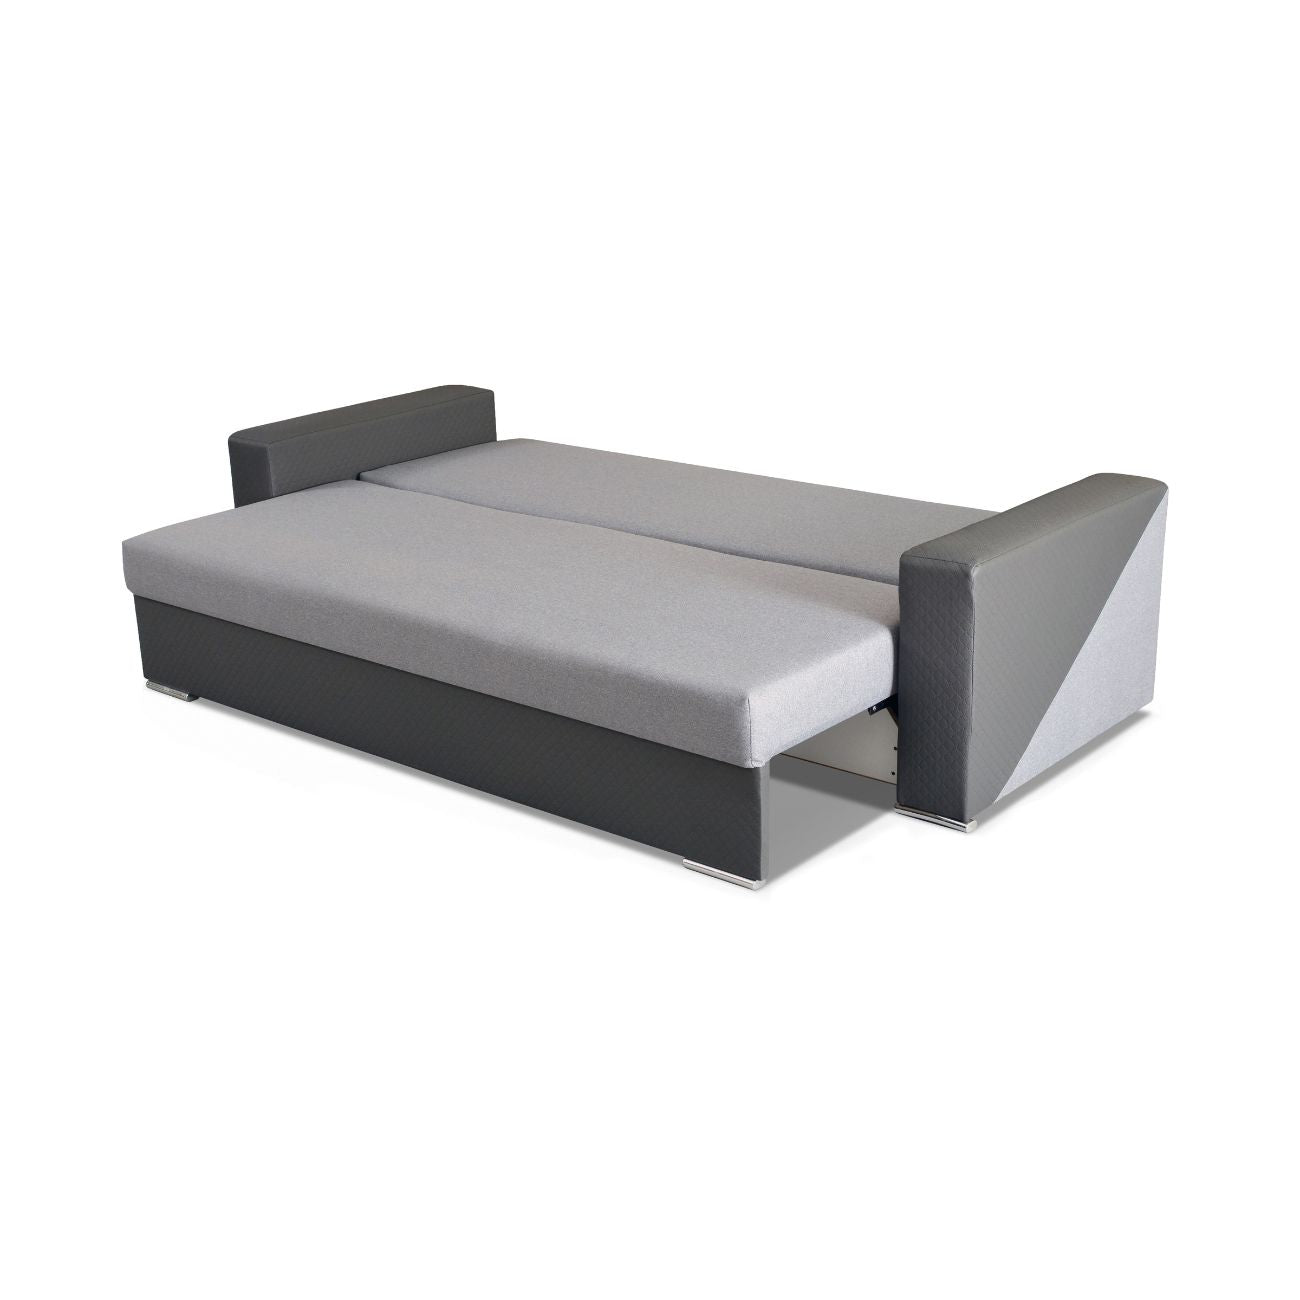 Rozkładanie kanapy z pojemnikiem do salonu INEZ pozwala na uzyskanie trwałej i wygodnej powierzchni spania.